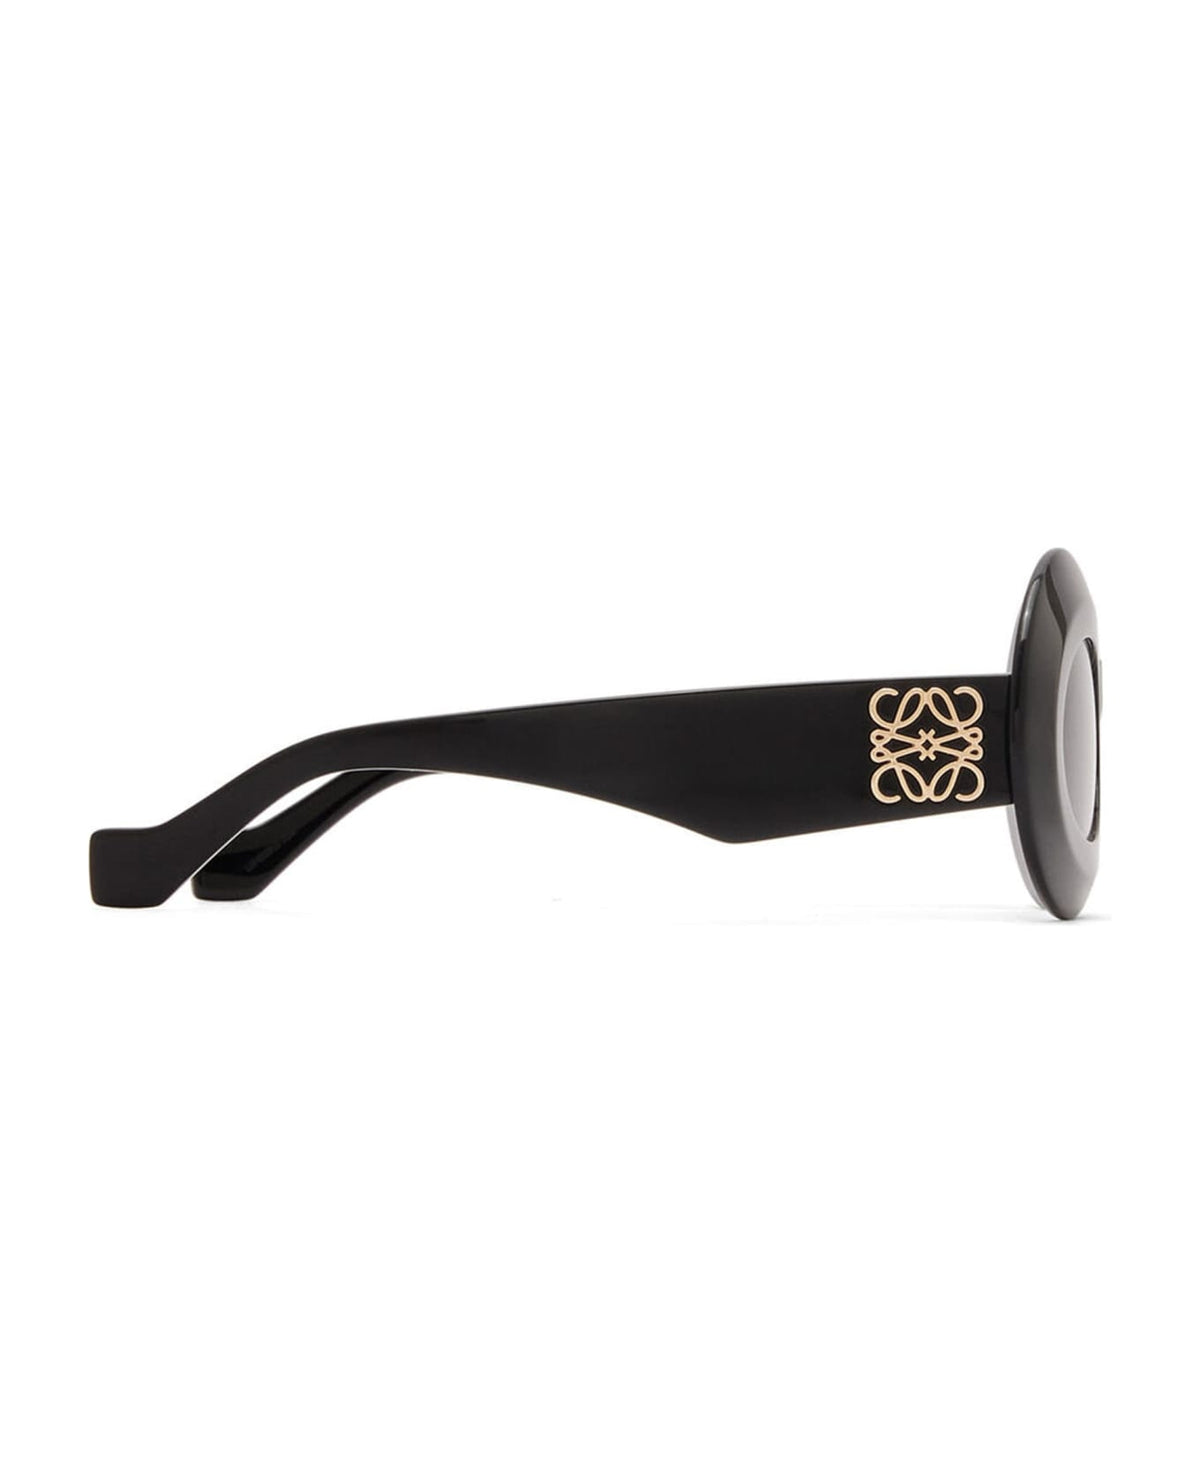 Lw40091i - Black Sunglasses